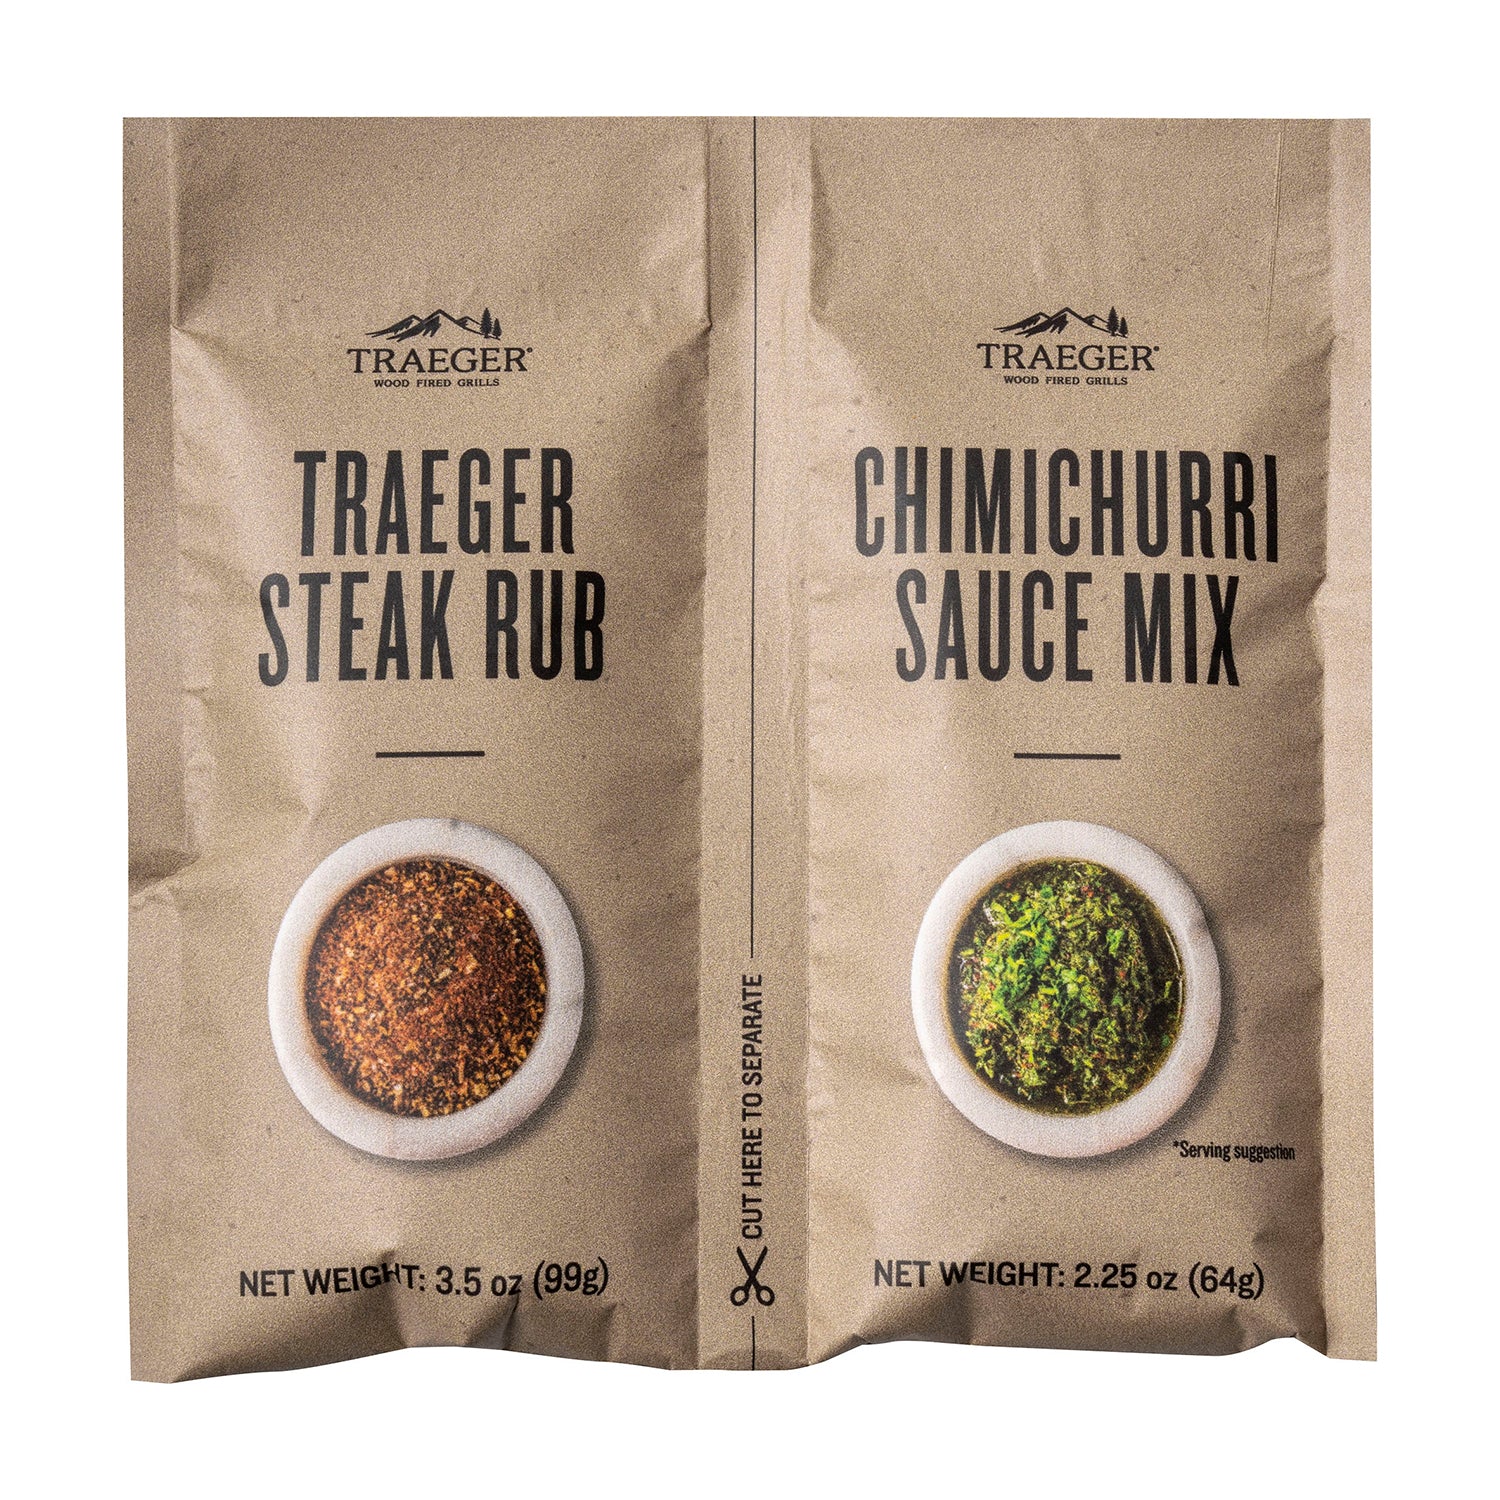 Traeger Summer Steak Blend Pellets Hickory/Mesquite/Oak W/ Rub & Sauce Kit 18 LB